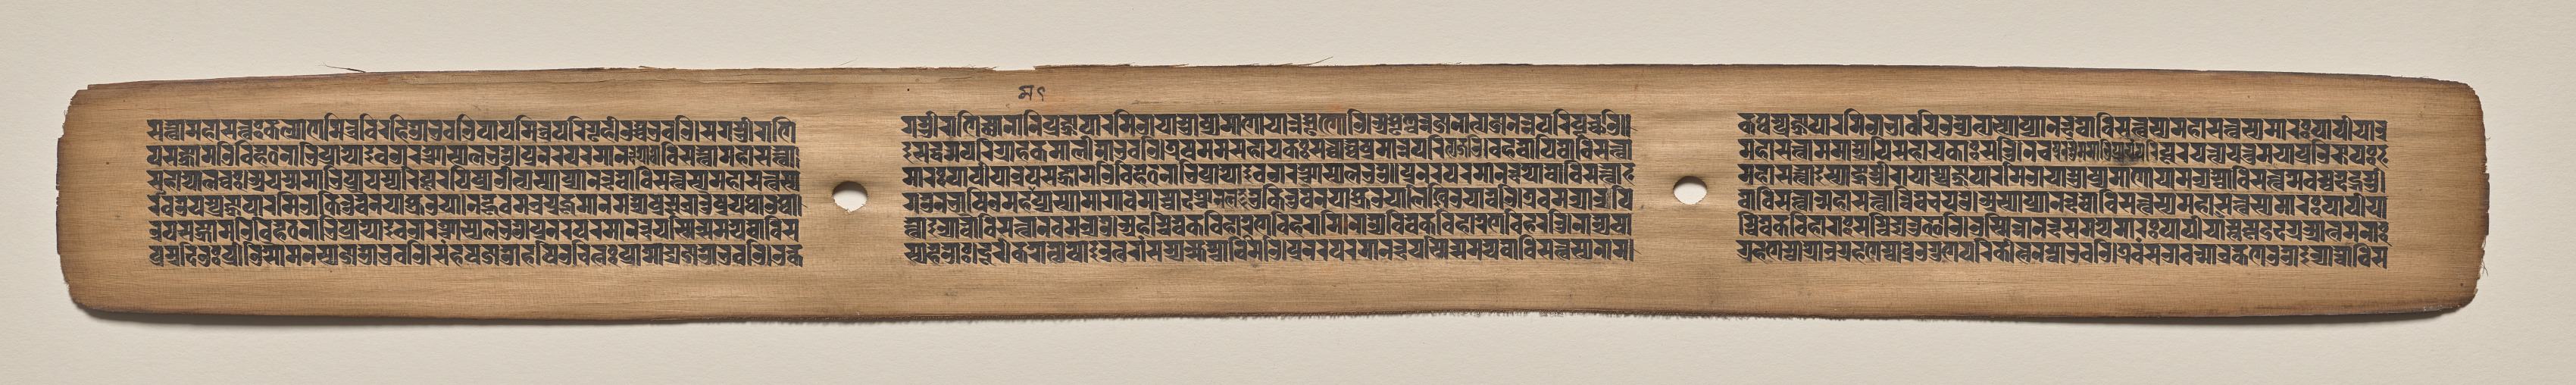 Text, Folio 147 (recto), from a Manuscript of the Perfection of Wisdom in Eight Thousand Lines (Ashtasahasrika Prajnaparamita-sutra)